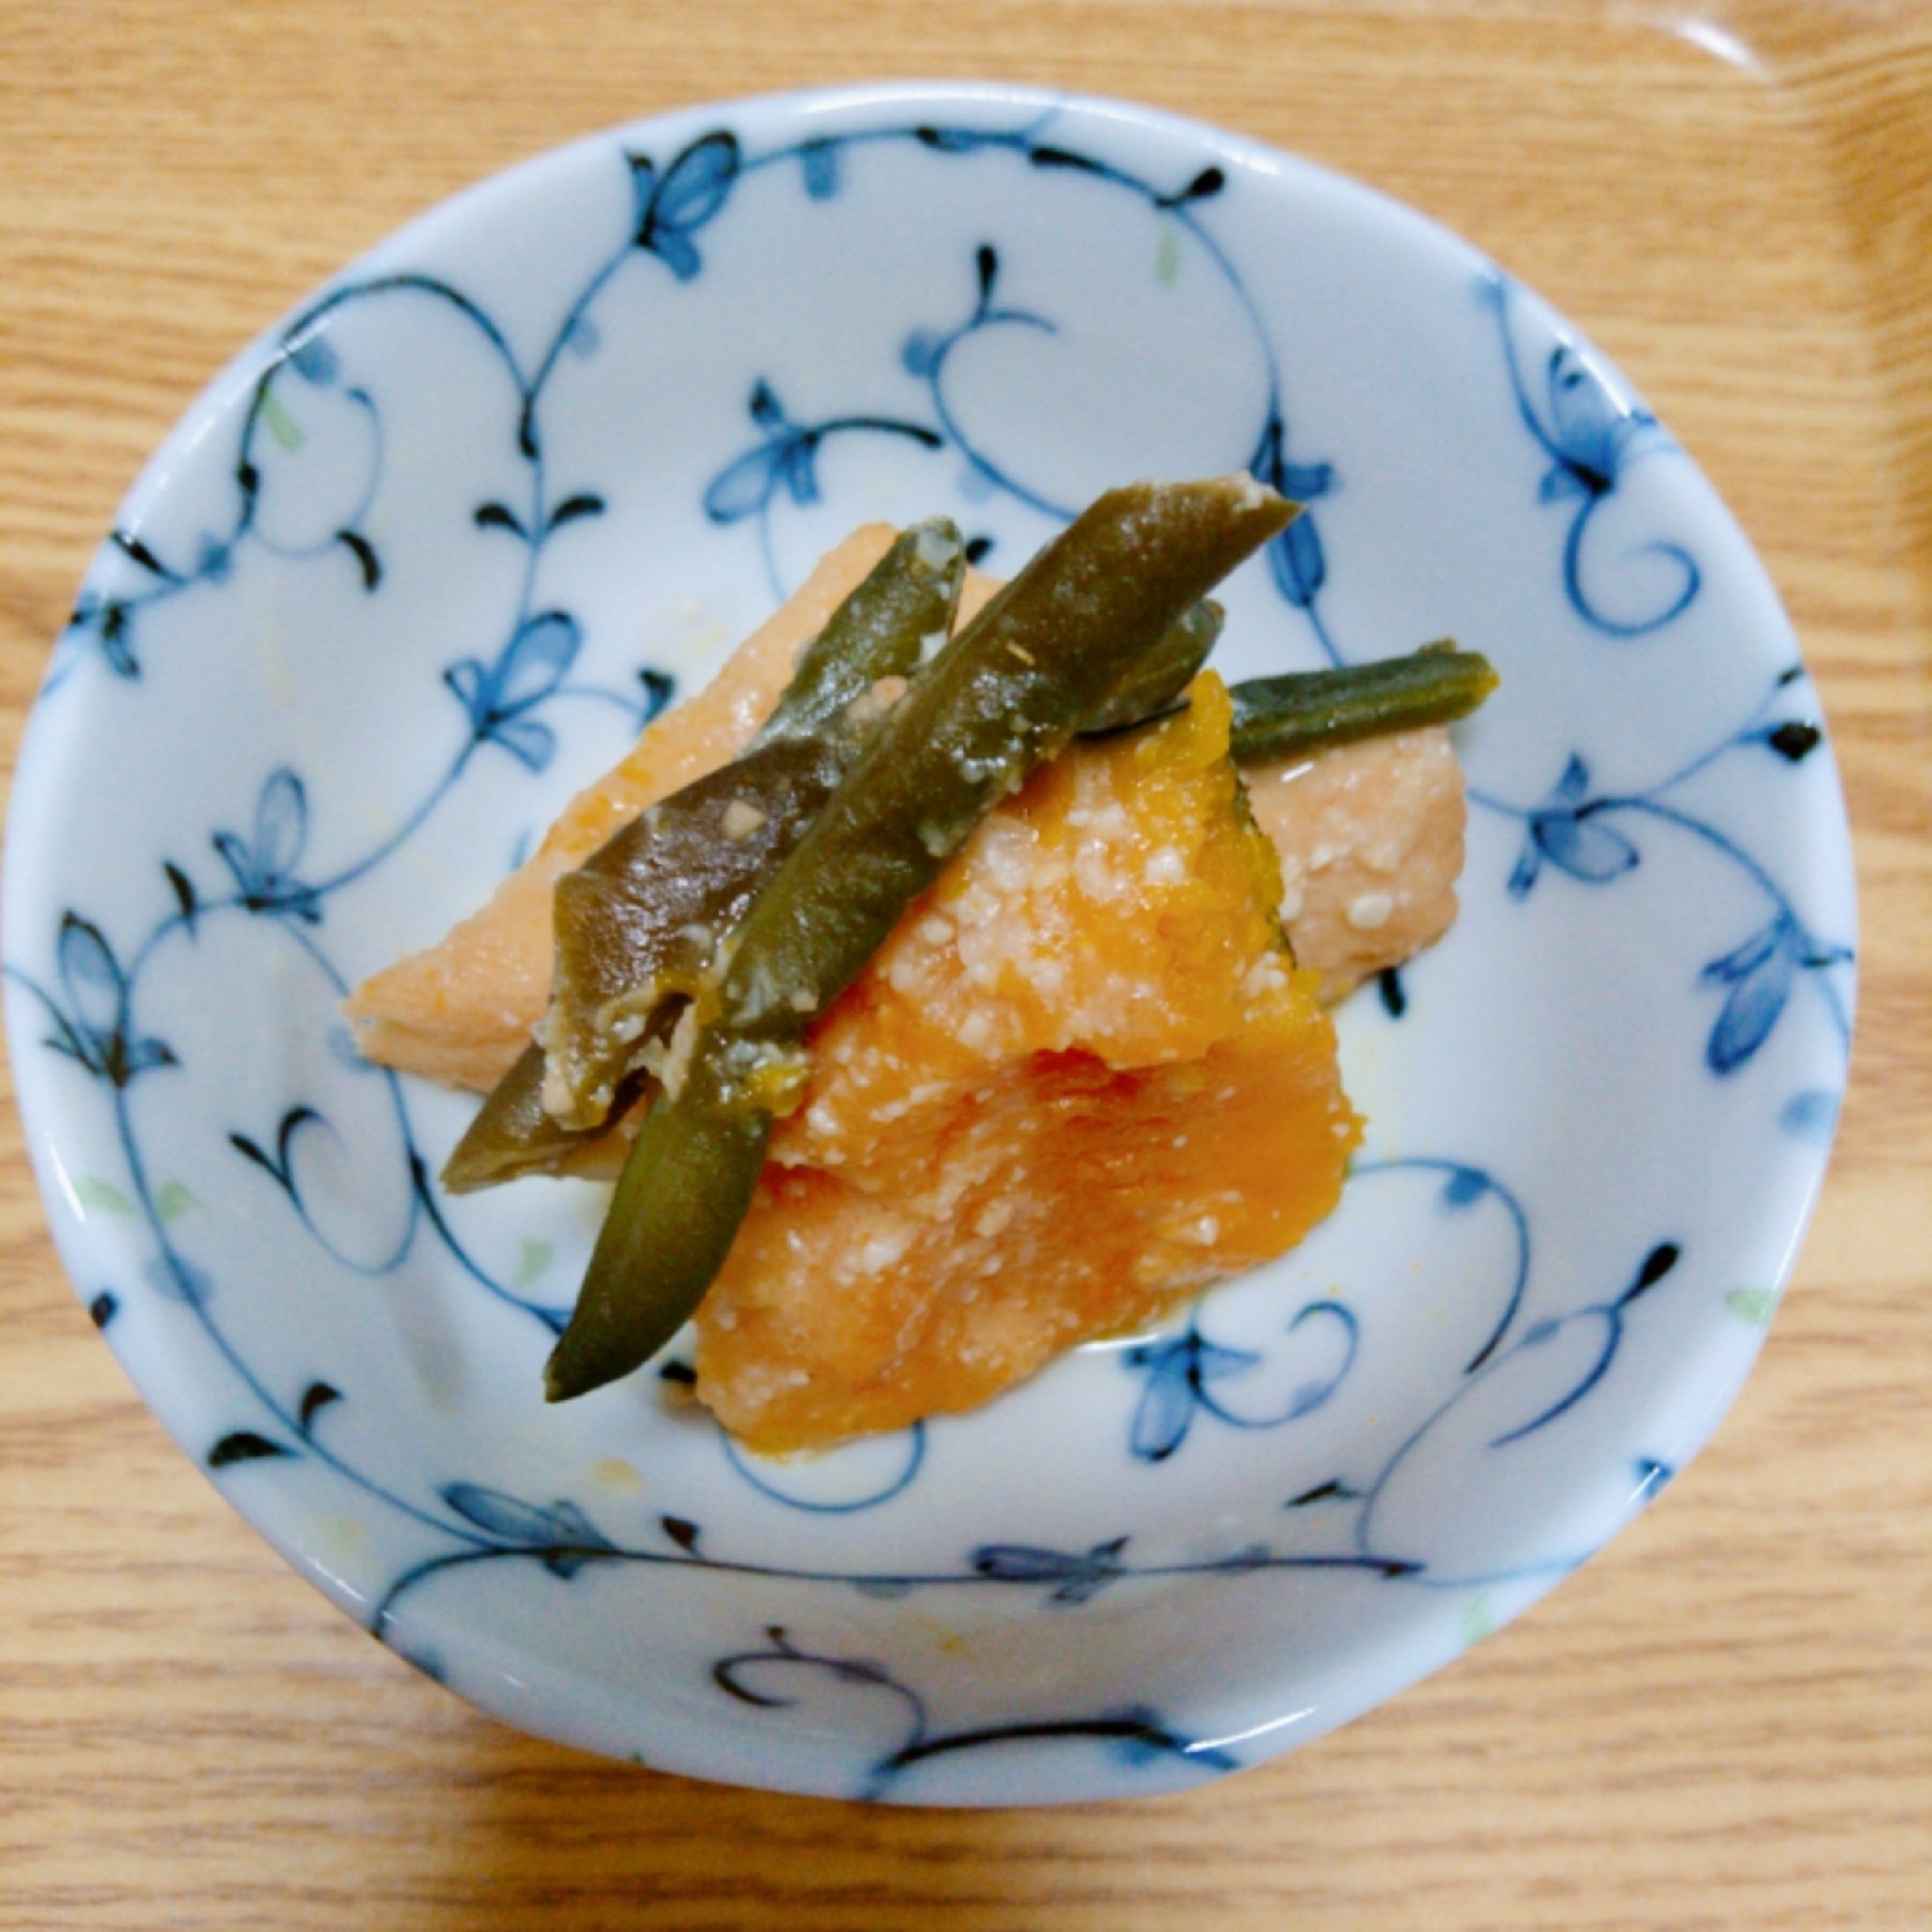 「厚揚げと野菜」の味噌煮